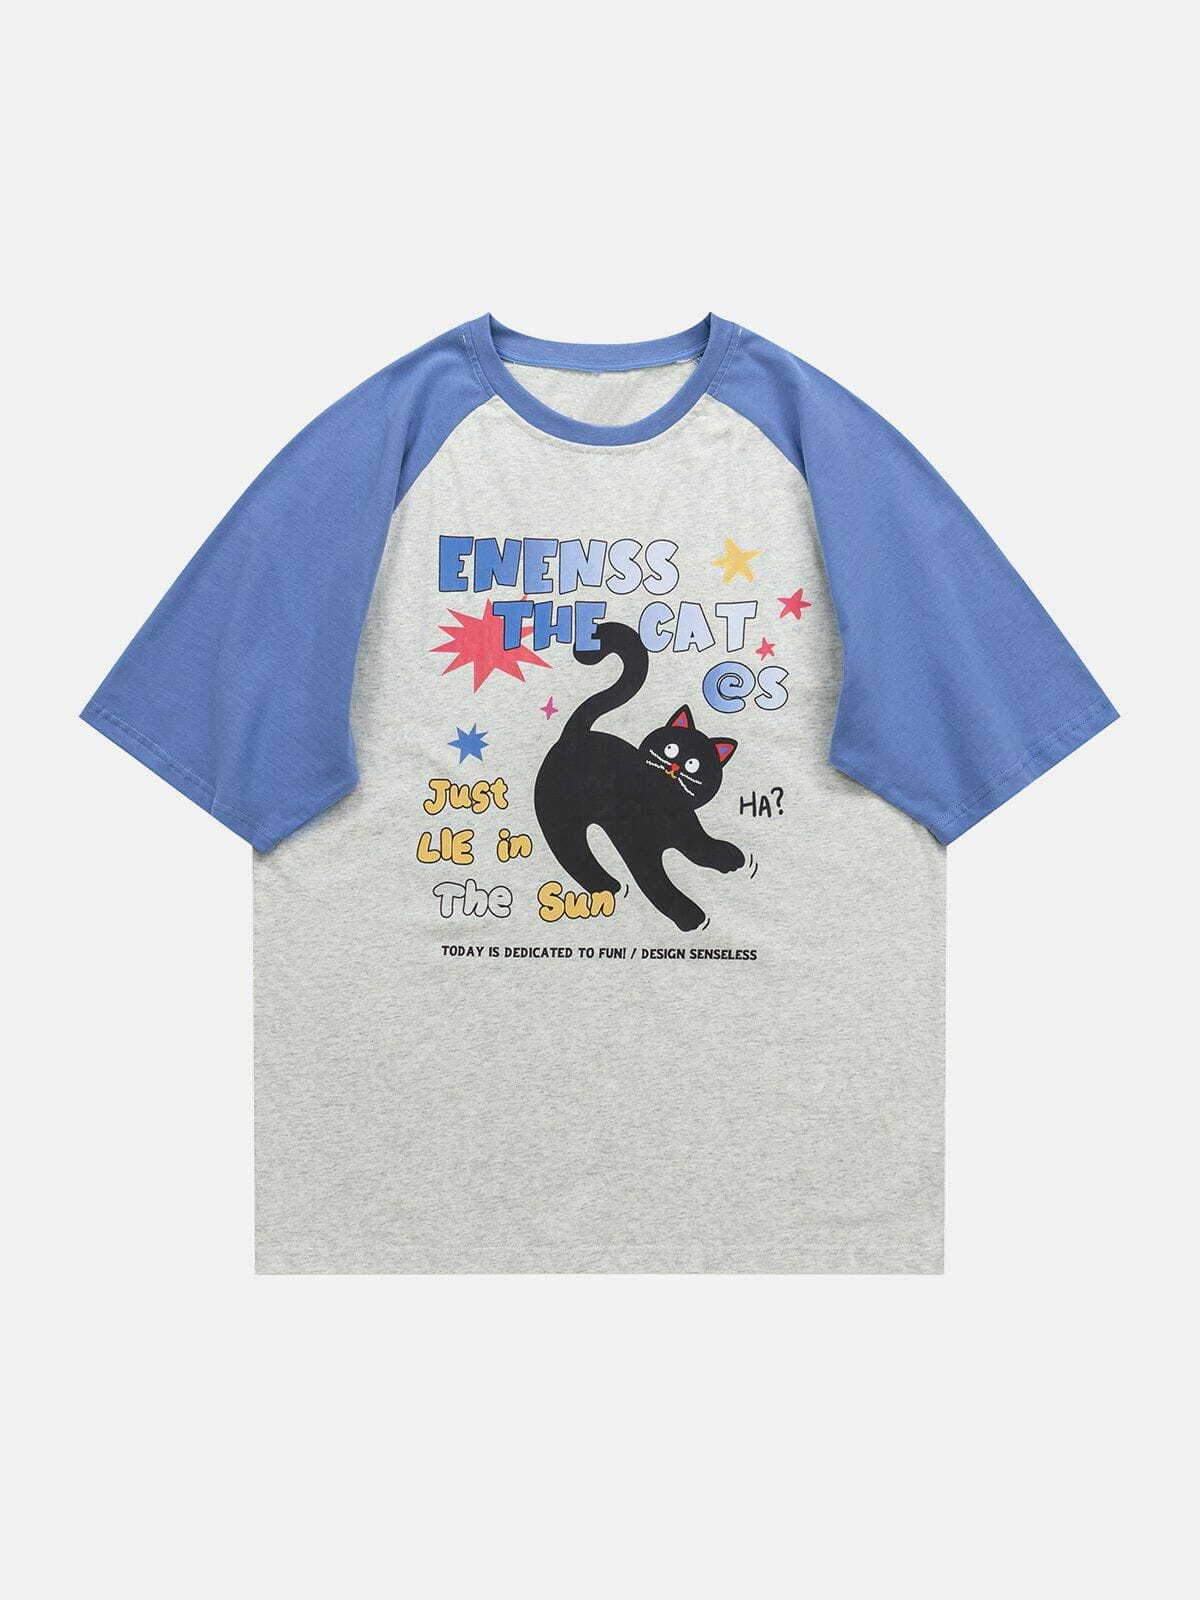 retro kitty tee edgy  vibrant y2k fashion shirt 1665